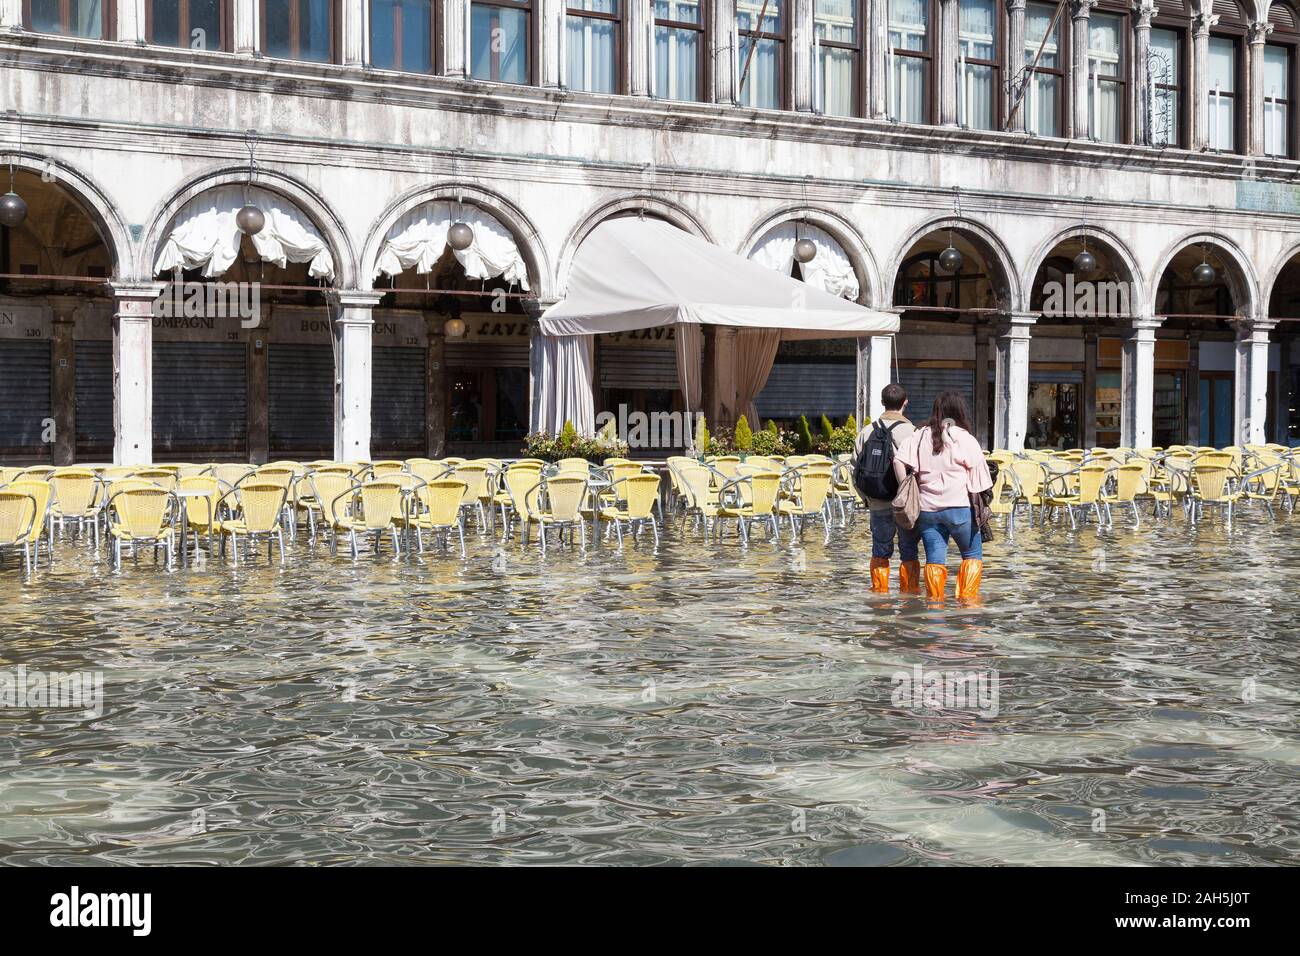 Acqua Alta inondations lors des grandes marées extrêmes de la Piazza San Marco, Venise, Italie. Les touristes regardant vide chaises de restaurant au Caffe Laverna dans l'eau d'inondation Banque D'Images